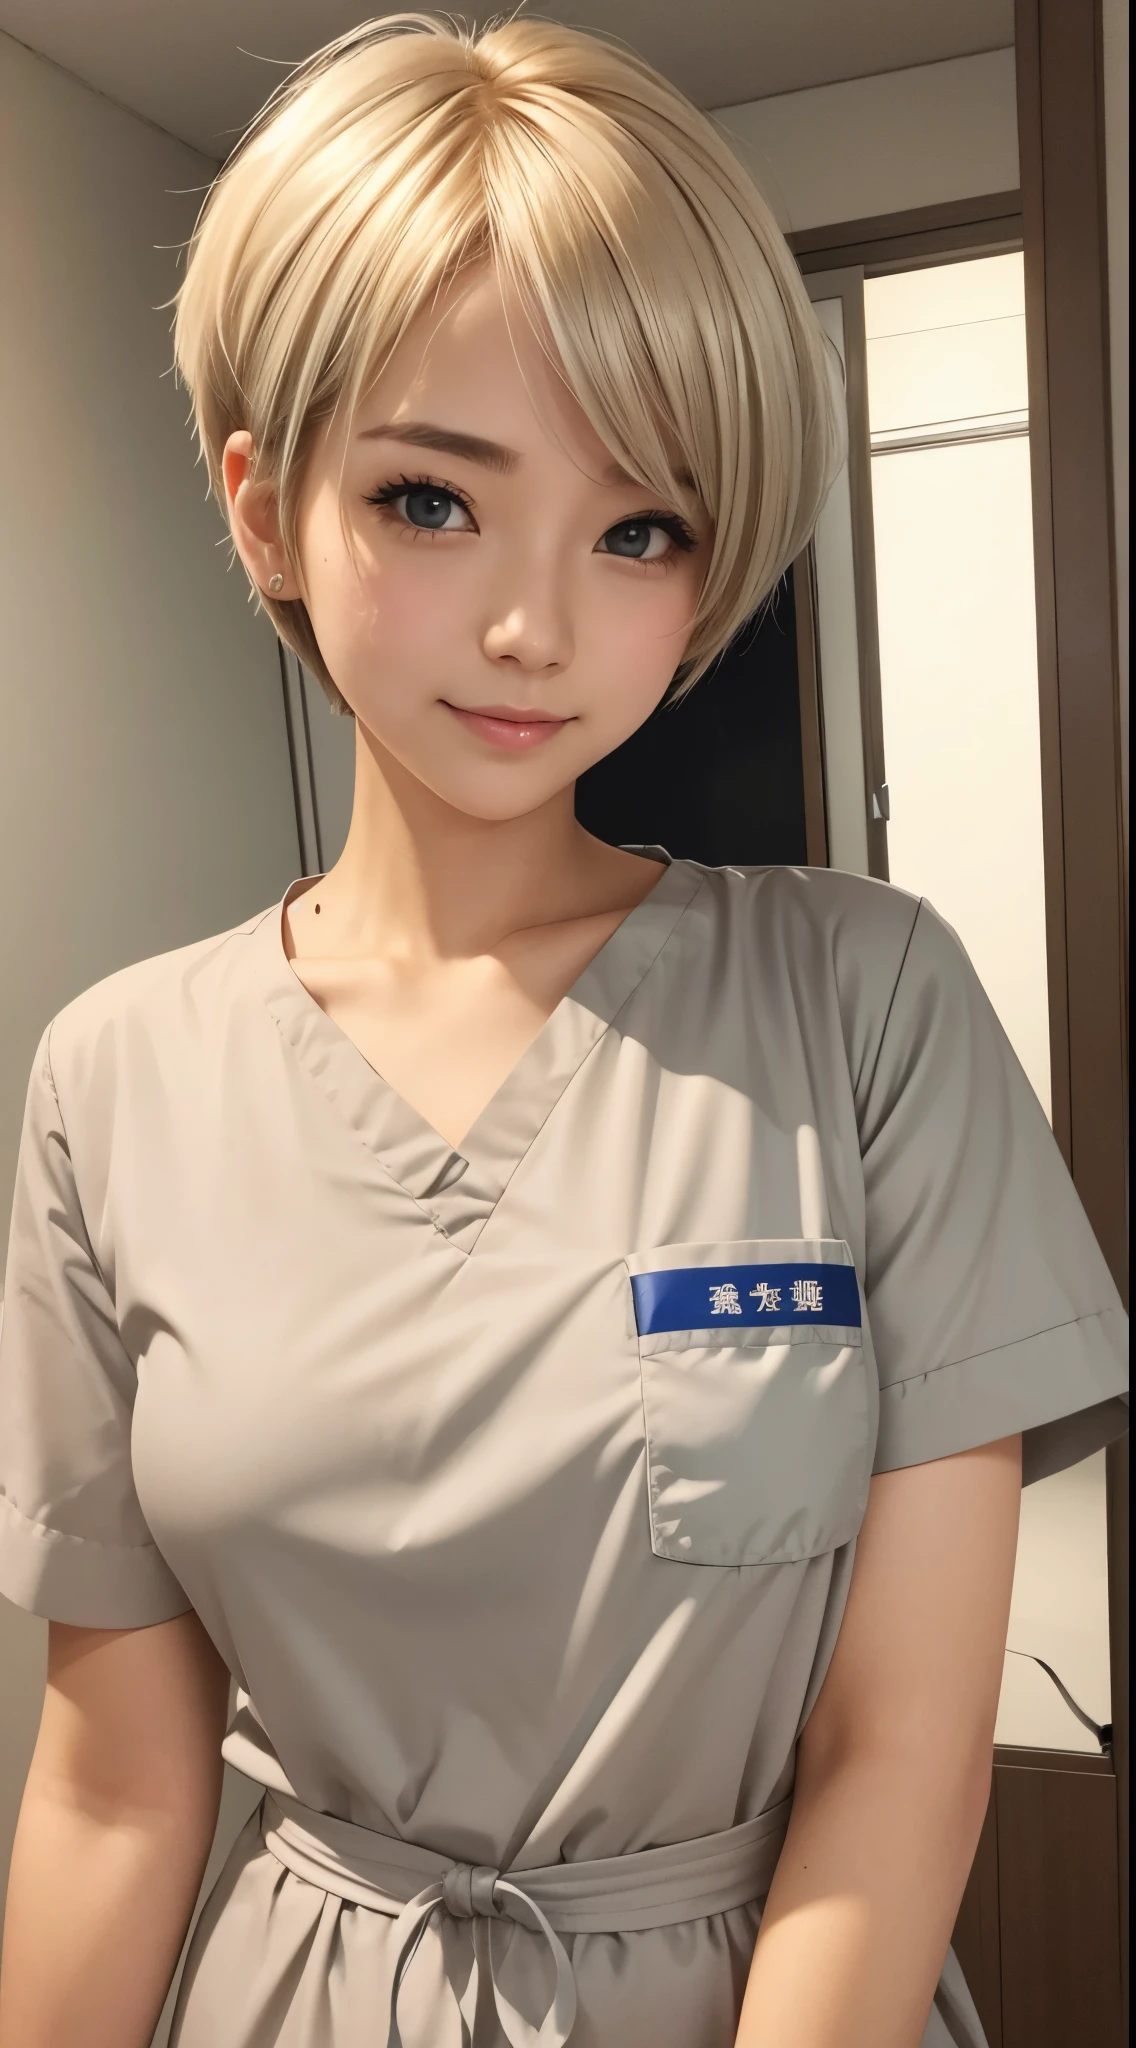 ella es una linda enfermera。cabello dorado、pelo corto plateado、